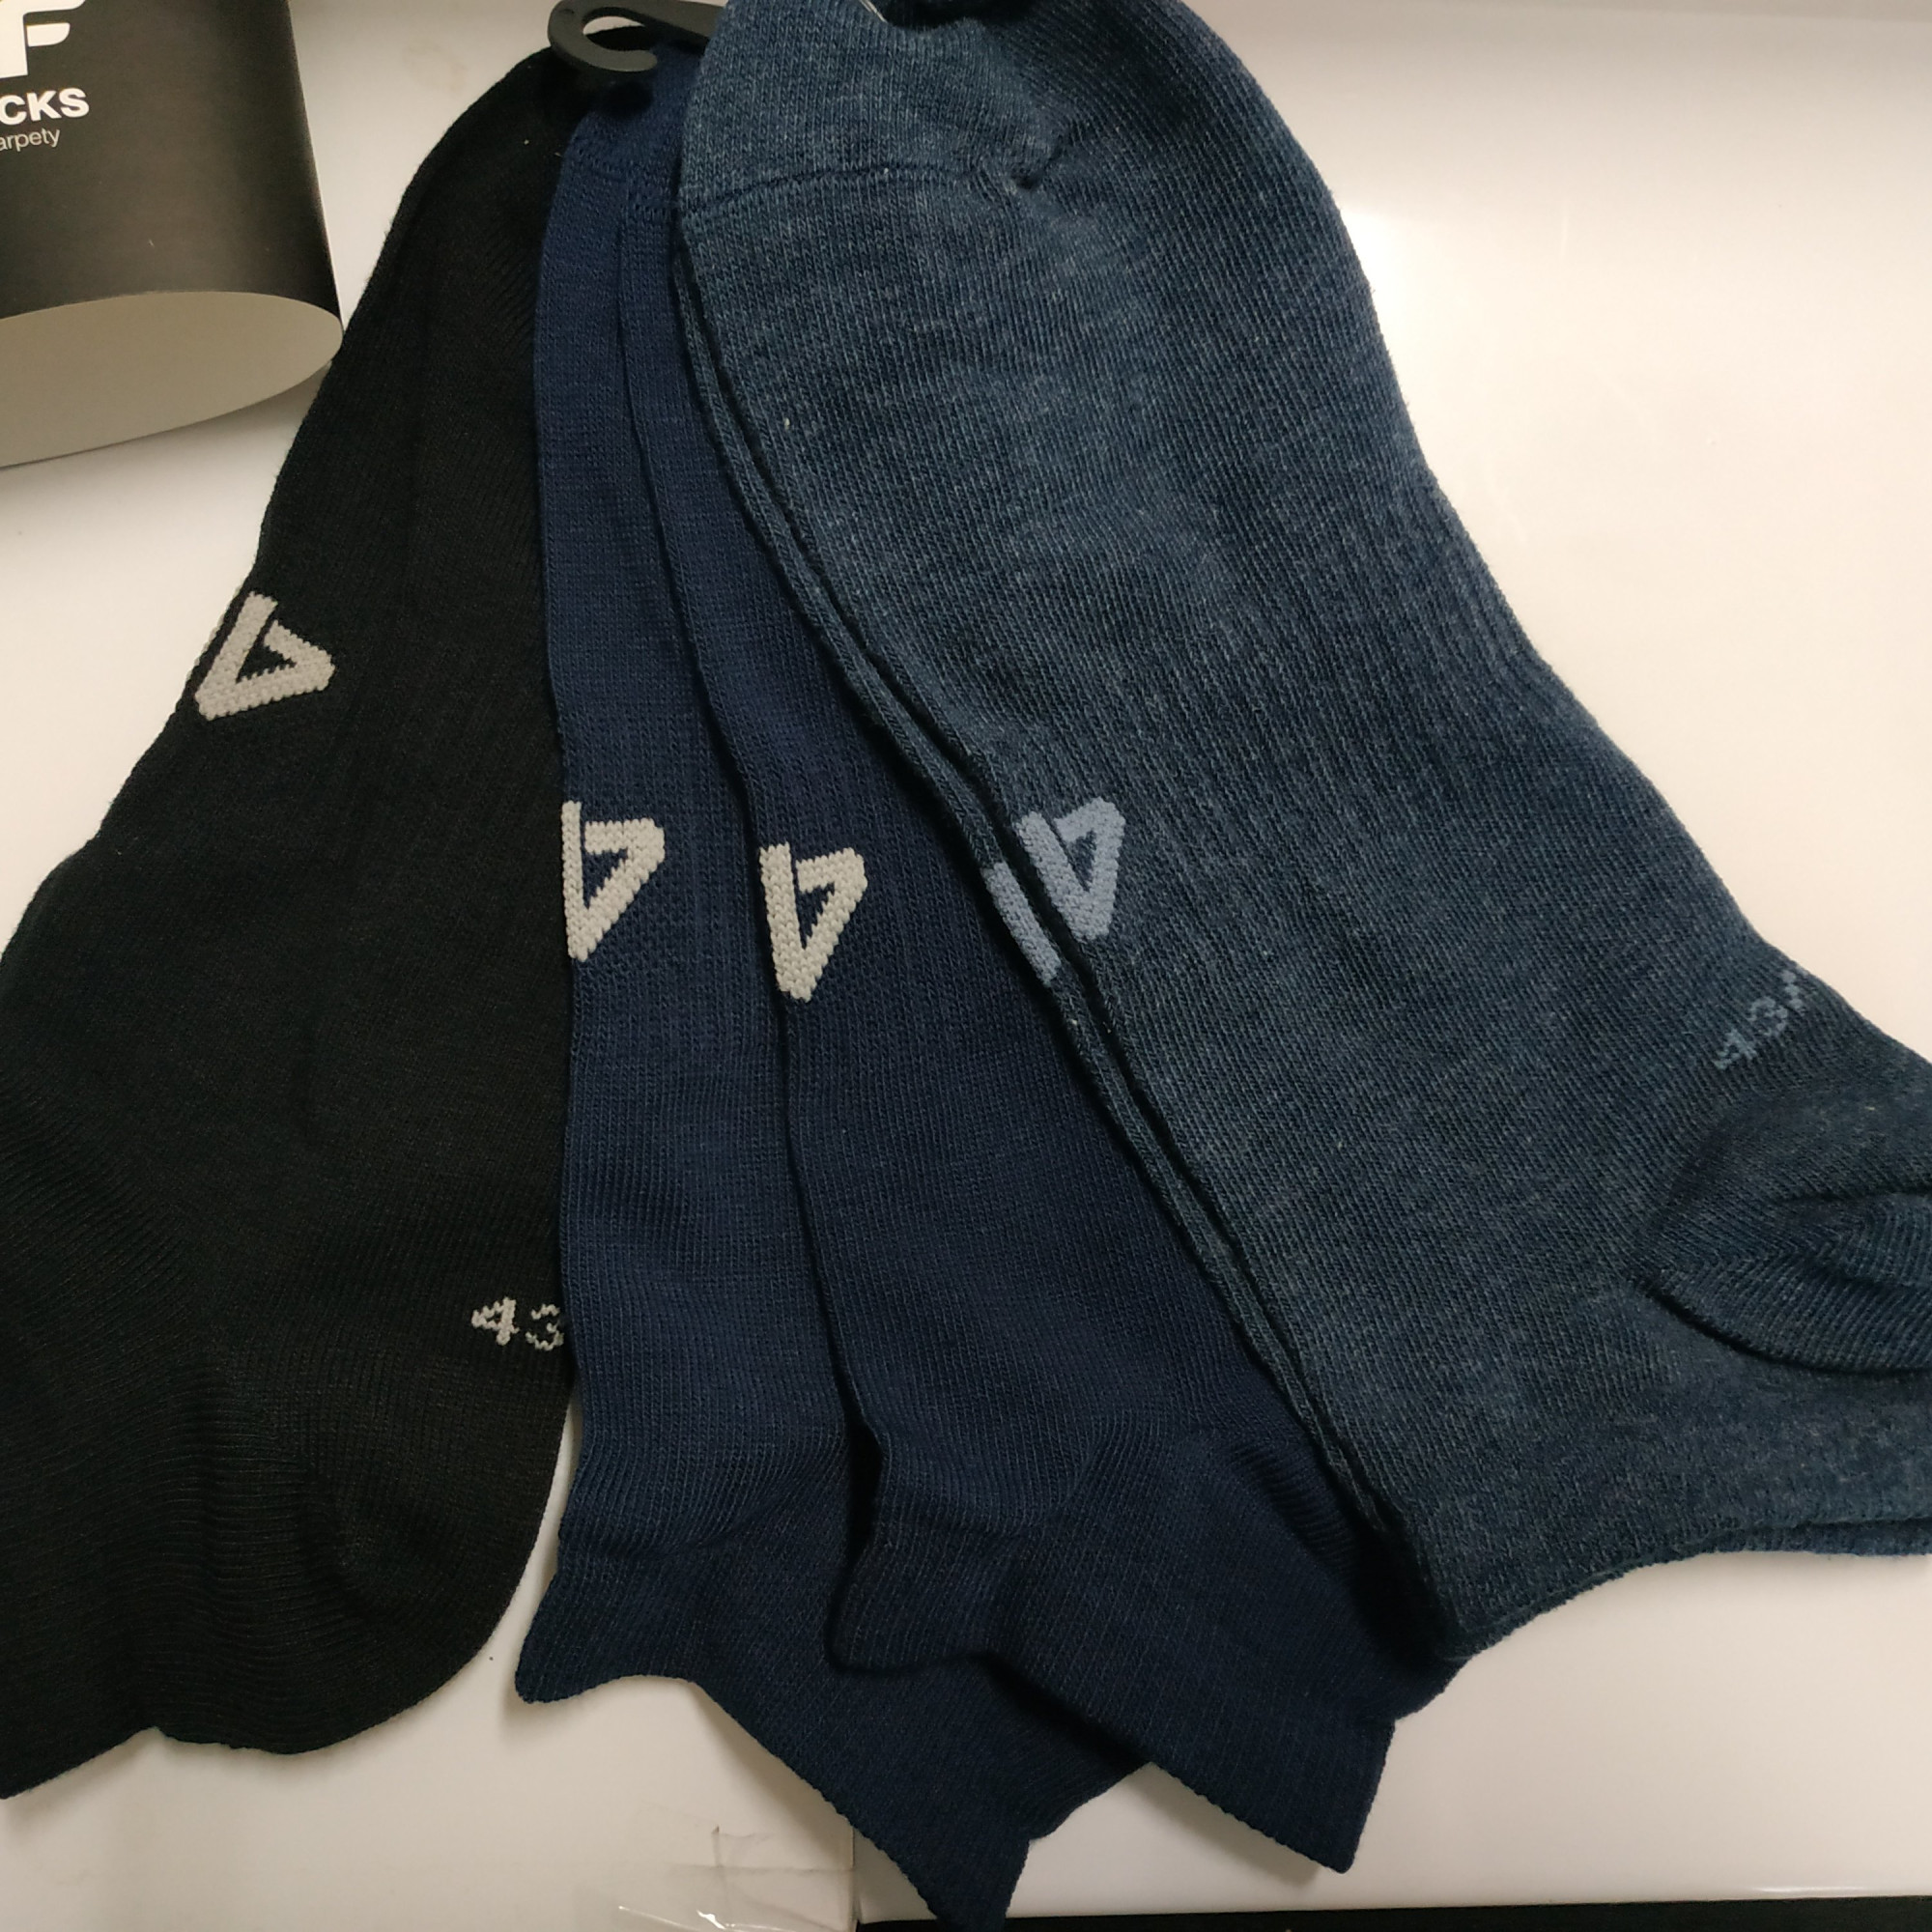 Pánské kotníkové ponožky 4F SOM301 Černé_Modré (3páry) Modrá 39-42